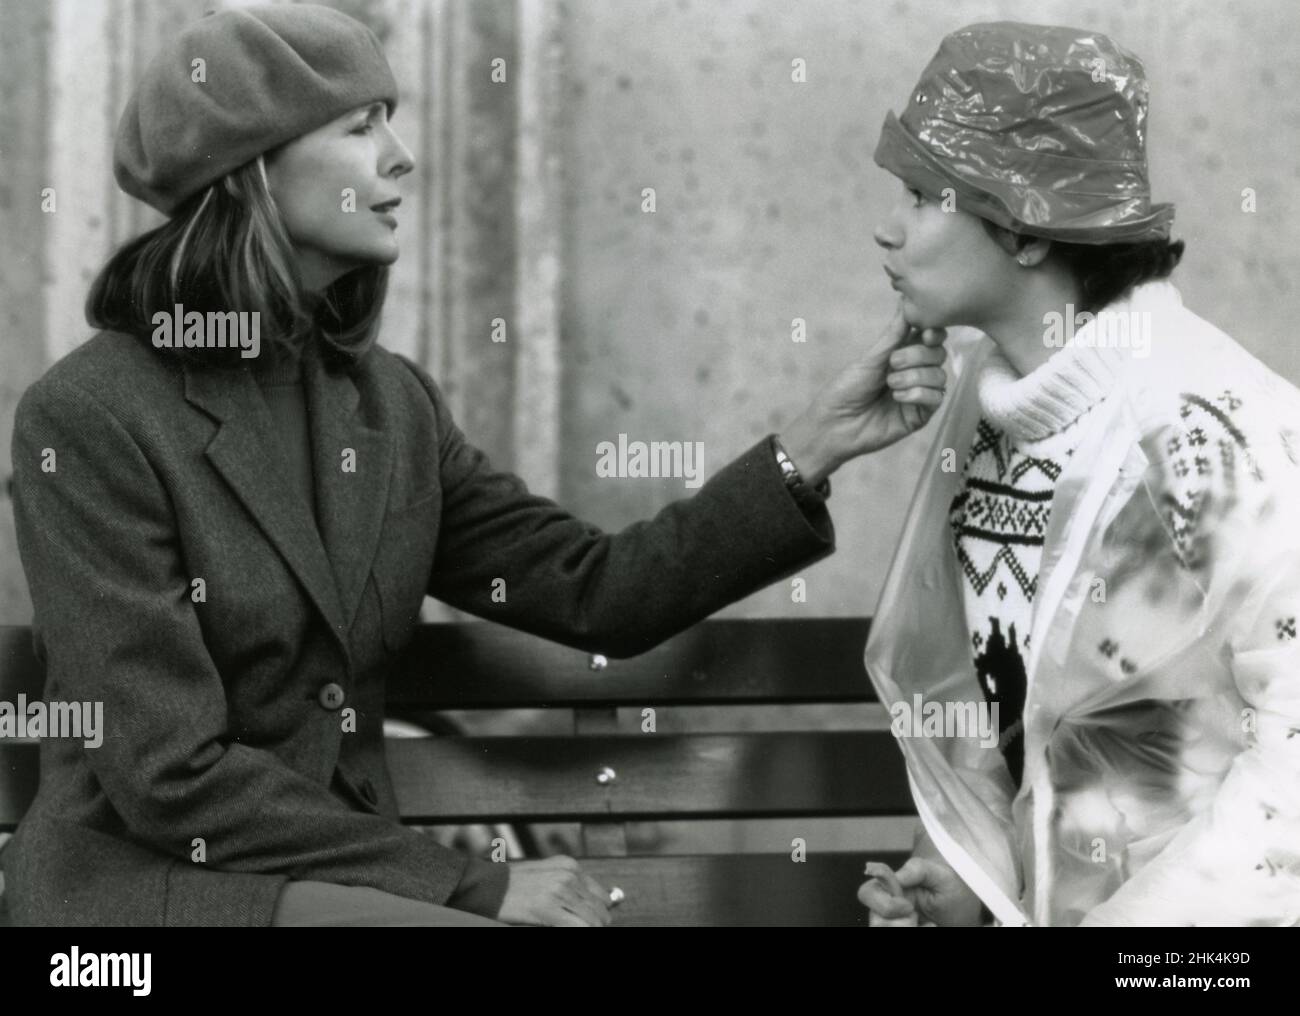 Le attrici americane Diane Keaton e Juliette Lewis nel film The Other Sister, USA 1999 Foto Stock